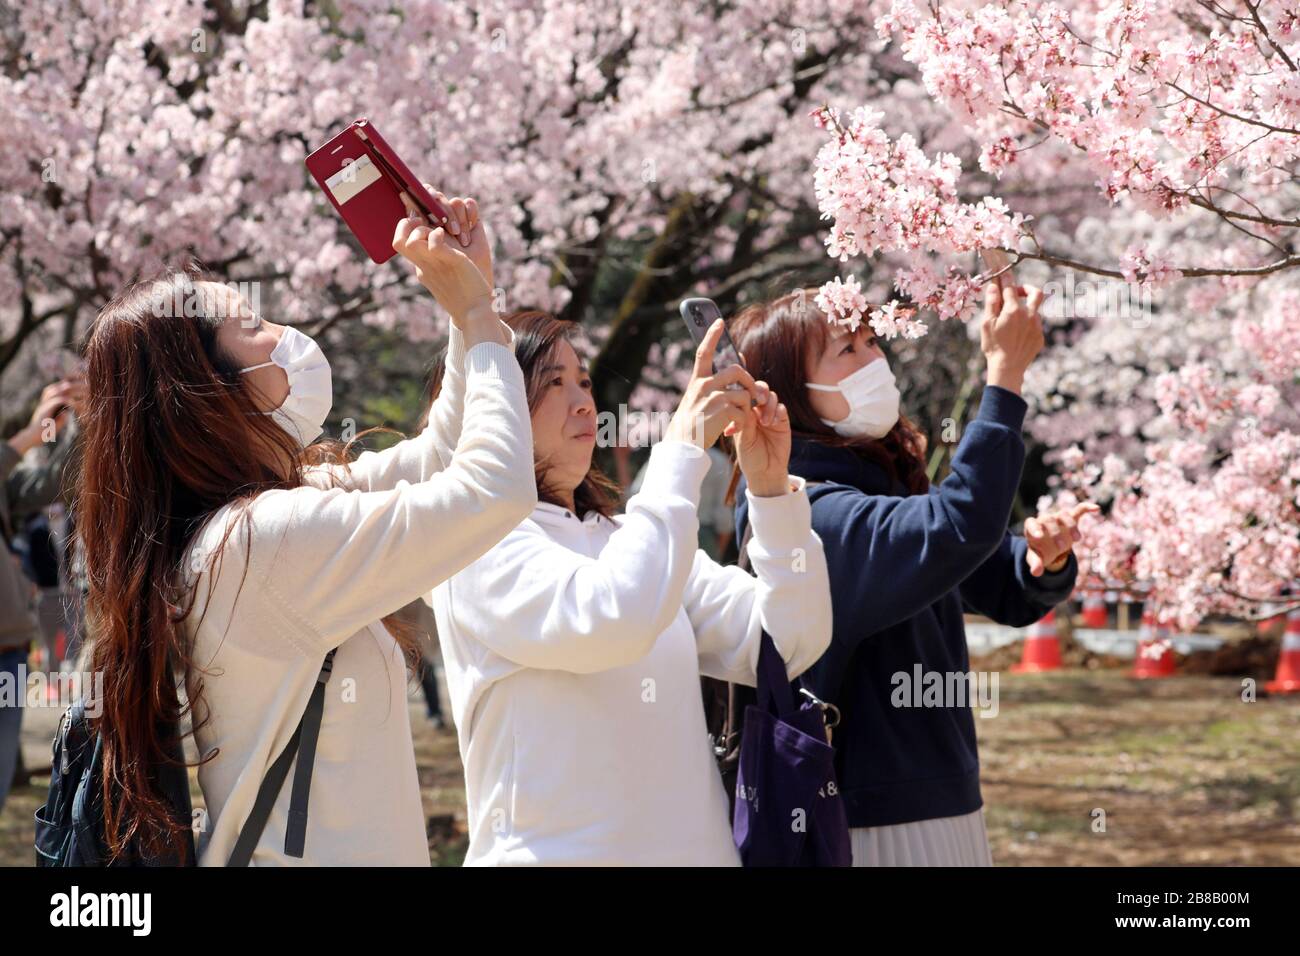 Tokio, Japan. März 2020. Die Angst vor dem Coronavirus hielt die Japaner nicht davon ab, an ihrer jährlichen Kirschblüte zu teilnehmen. Bewaffnet mit Gesichtsmasken stellte sich die Menschenmenge wie gewohnt heraus, um die blühenden Bäume im Tokioter Shinjuku Gyoen Nationalpark in Shinjuku in Japan zu fotografieren. Es gab Einschränkungen bei den üblichen organisierten Picknicks, und die Menschenmengen waren möglicherweise dünner als im letzten Jahr, aber das hat nicht dazu geführt, dass die Menschen die Blüte genossen und ein paar provisorische Picknicks aufstellten, wenn auch mit etwas mehr Abstand zwischen den Gruppen als sonst. Credit: Paul Brown/Alamy Live News Stockfoto